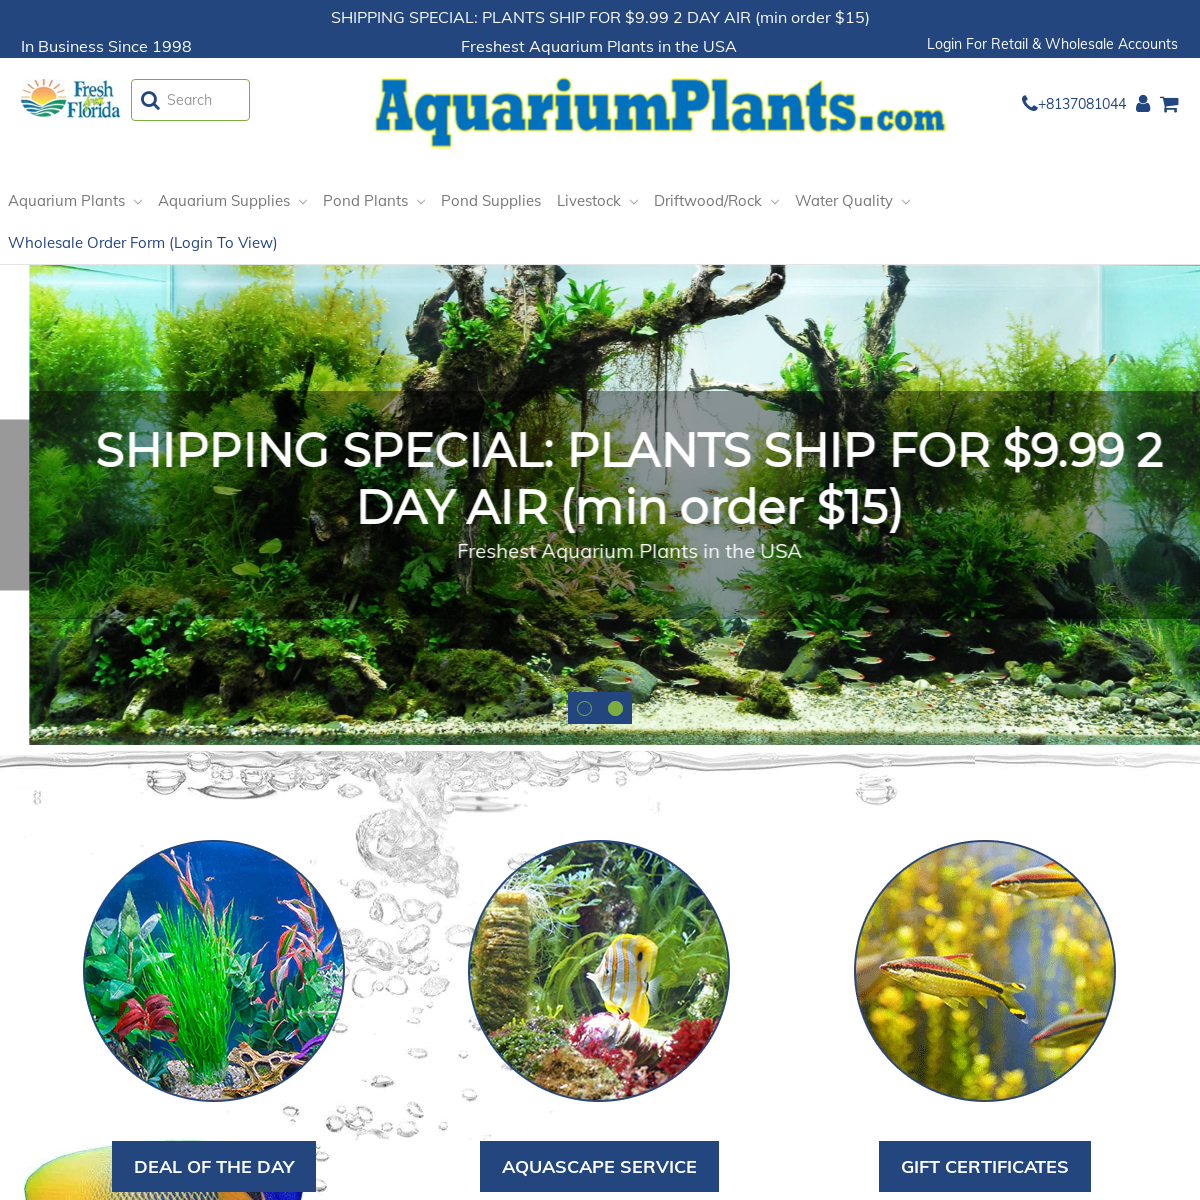 A complete backup of aquariumplants.com